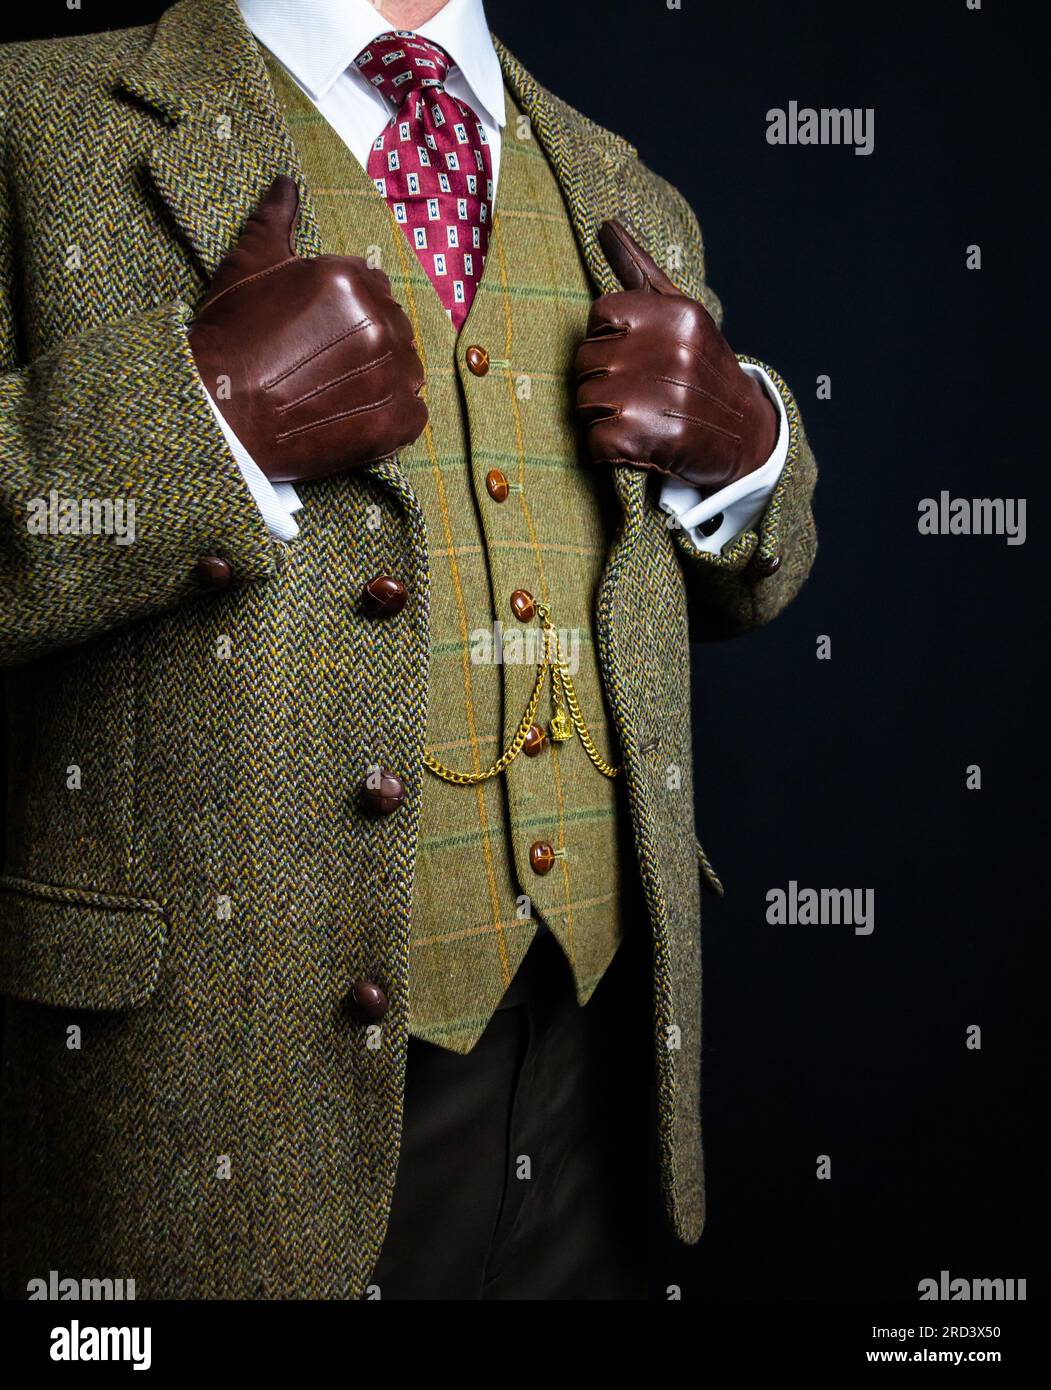 Portrait de Gentleman en tweed suit et gants en cuir debout élégamment. Style vintage et mode rétro de Gentleman anglais Banque D'Images